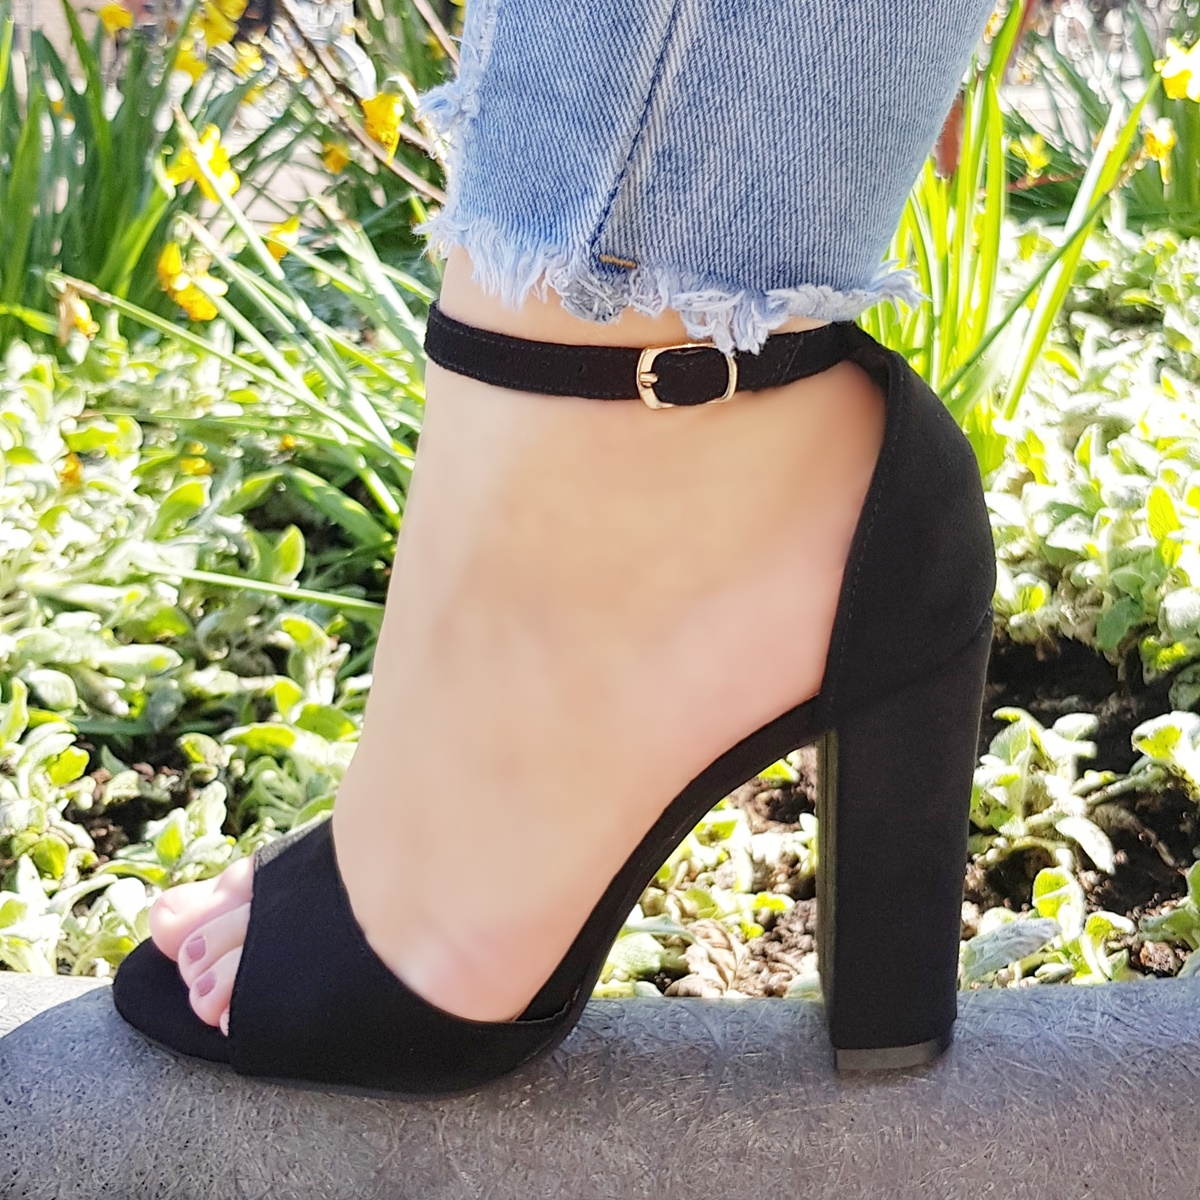 Zwarte sandalen met brede hak en enkelbandje | Zwarte sandalen met open teen en stevige hak